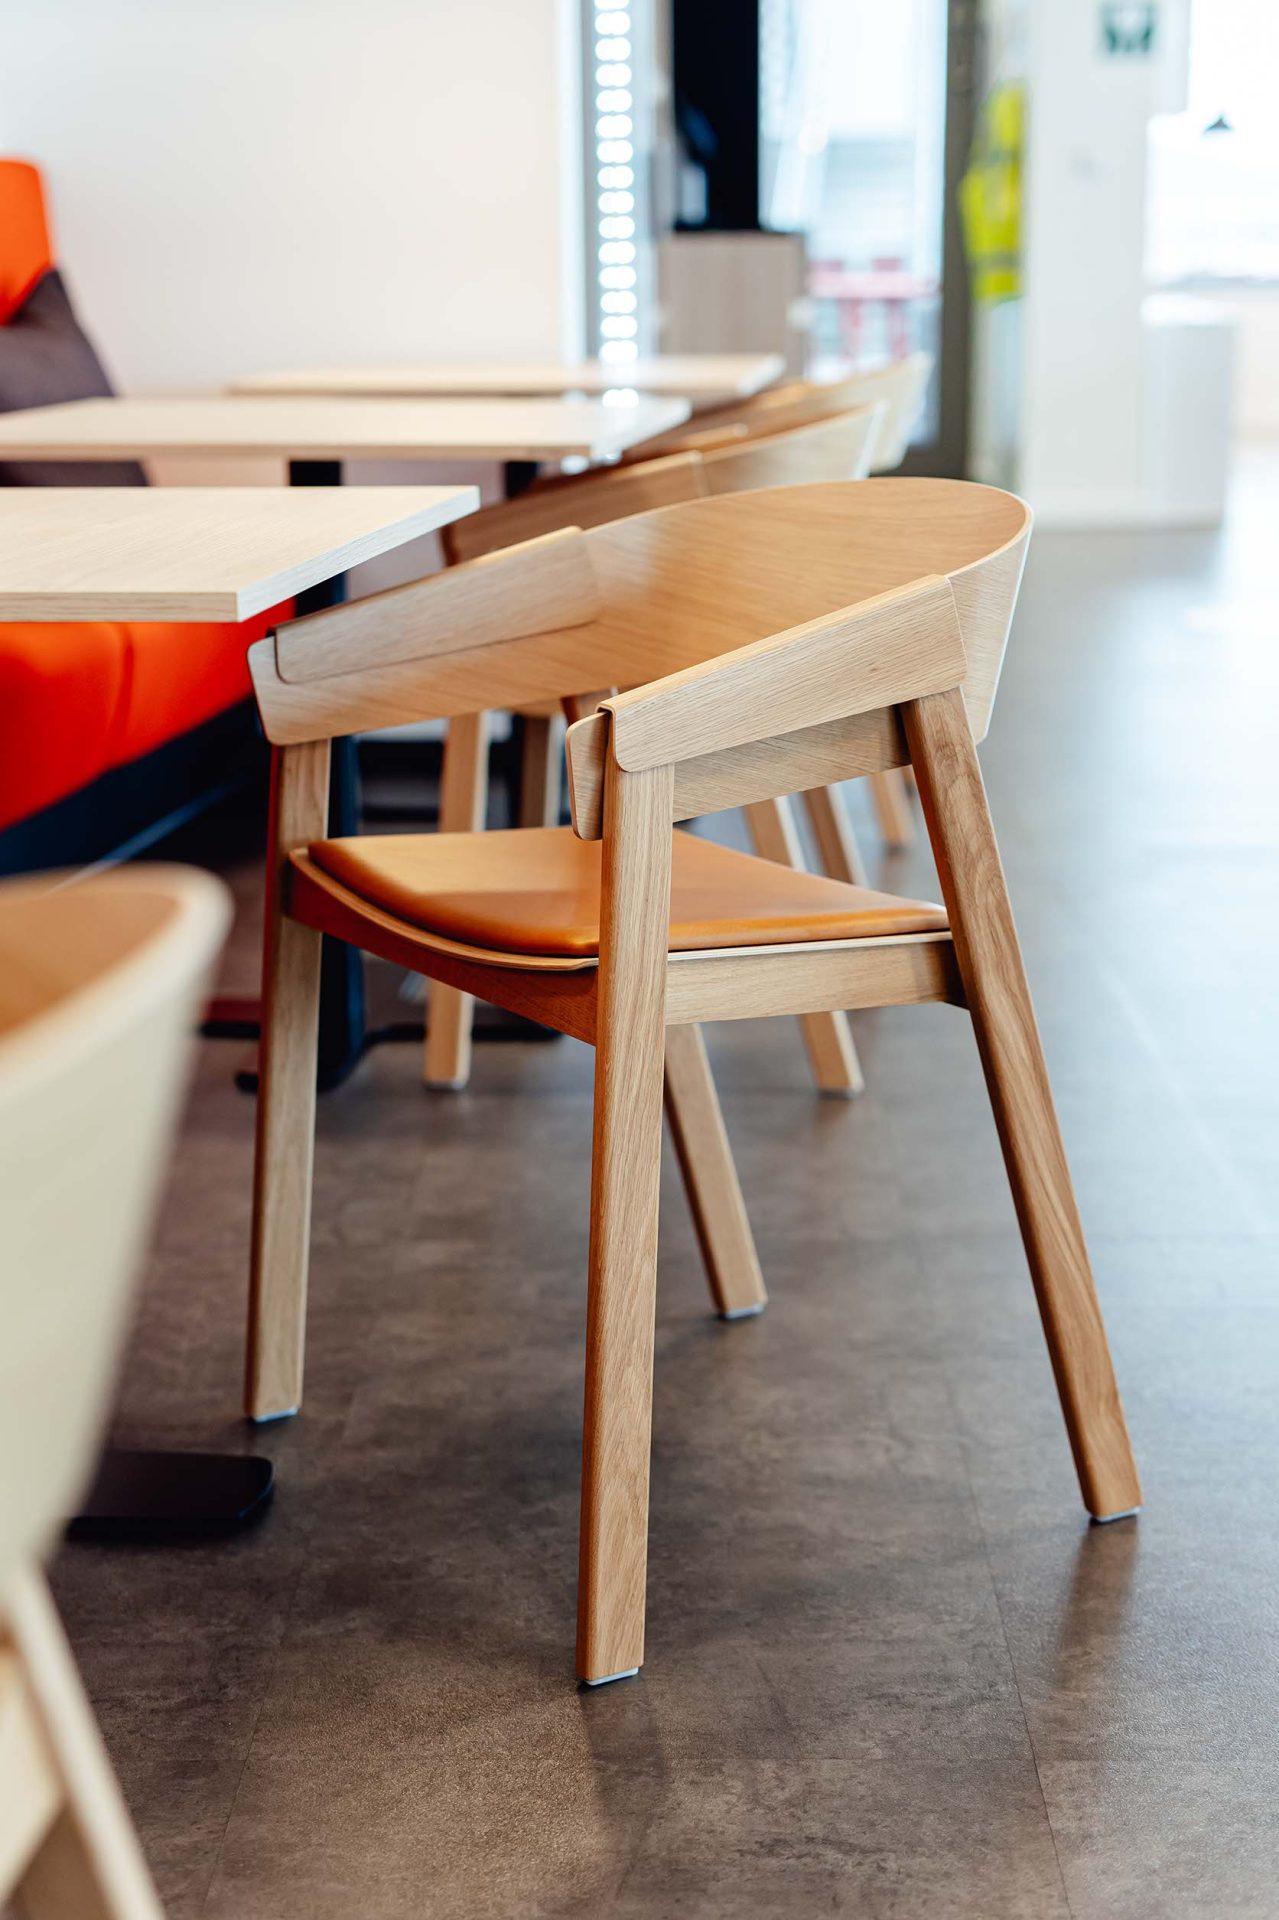 CBC Namur : aménagement complet de l'espace cafétéria | Bedimo